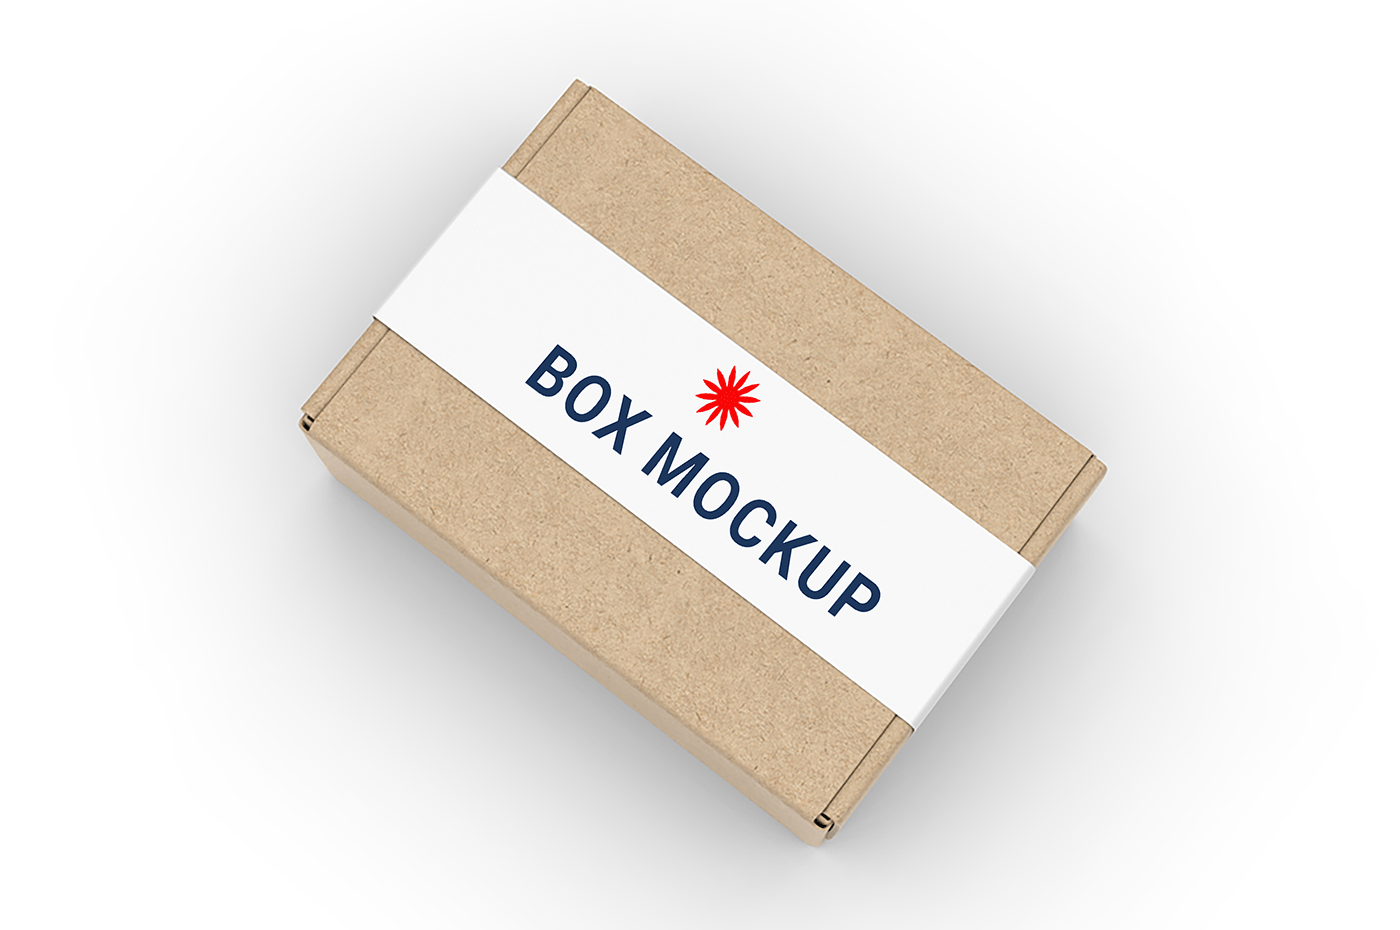 box box mockup corrugated Mockup Packaging packaging mockup Packaging Paper Box mockup free